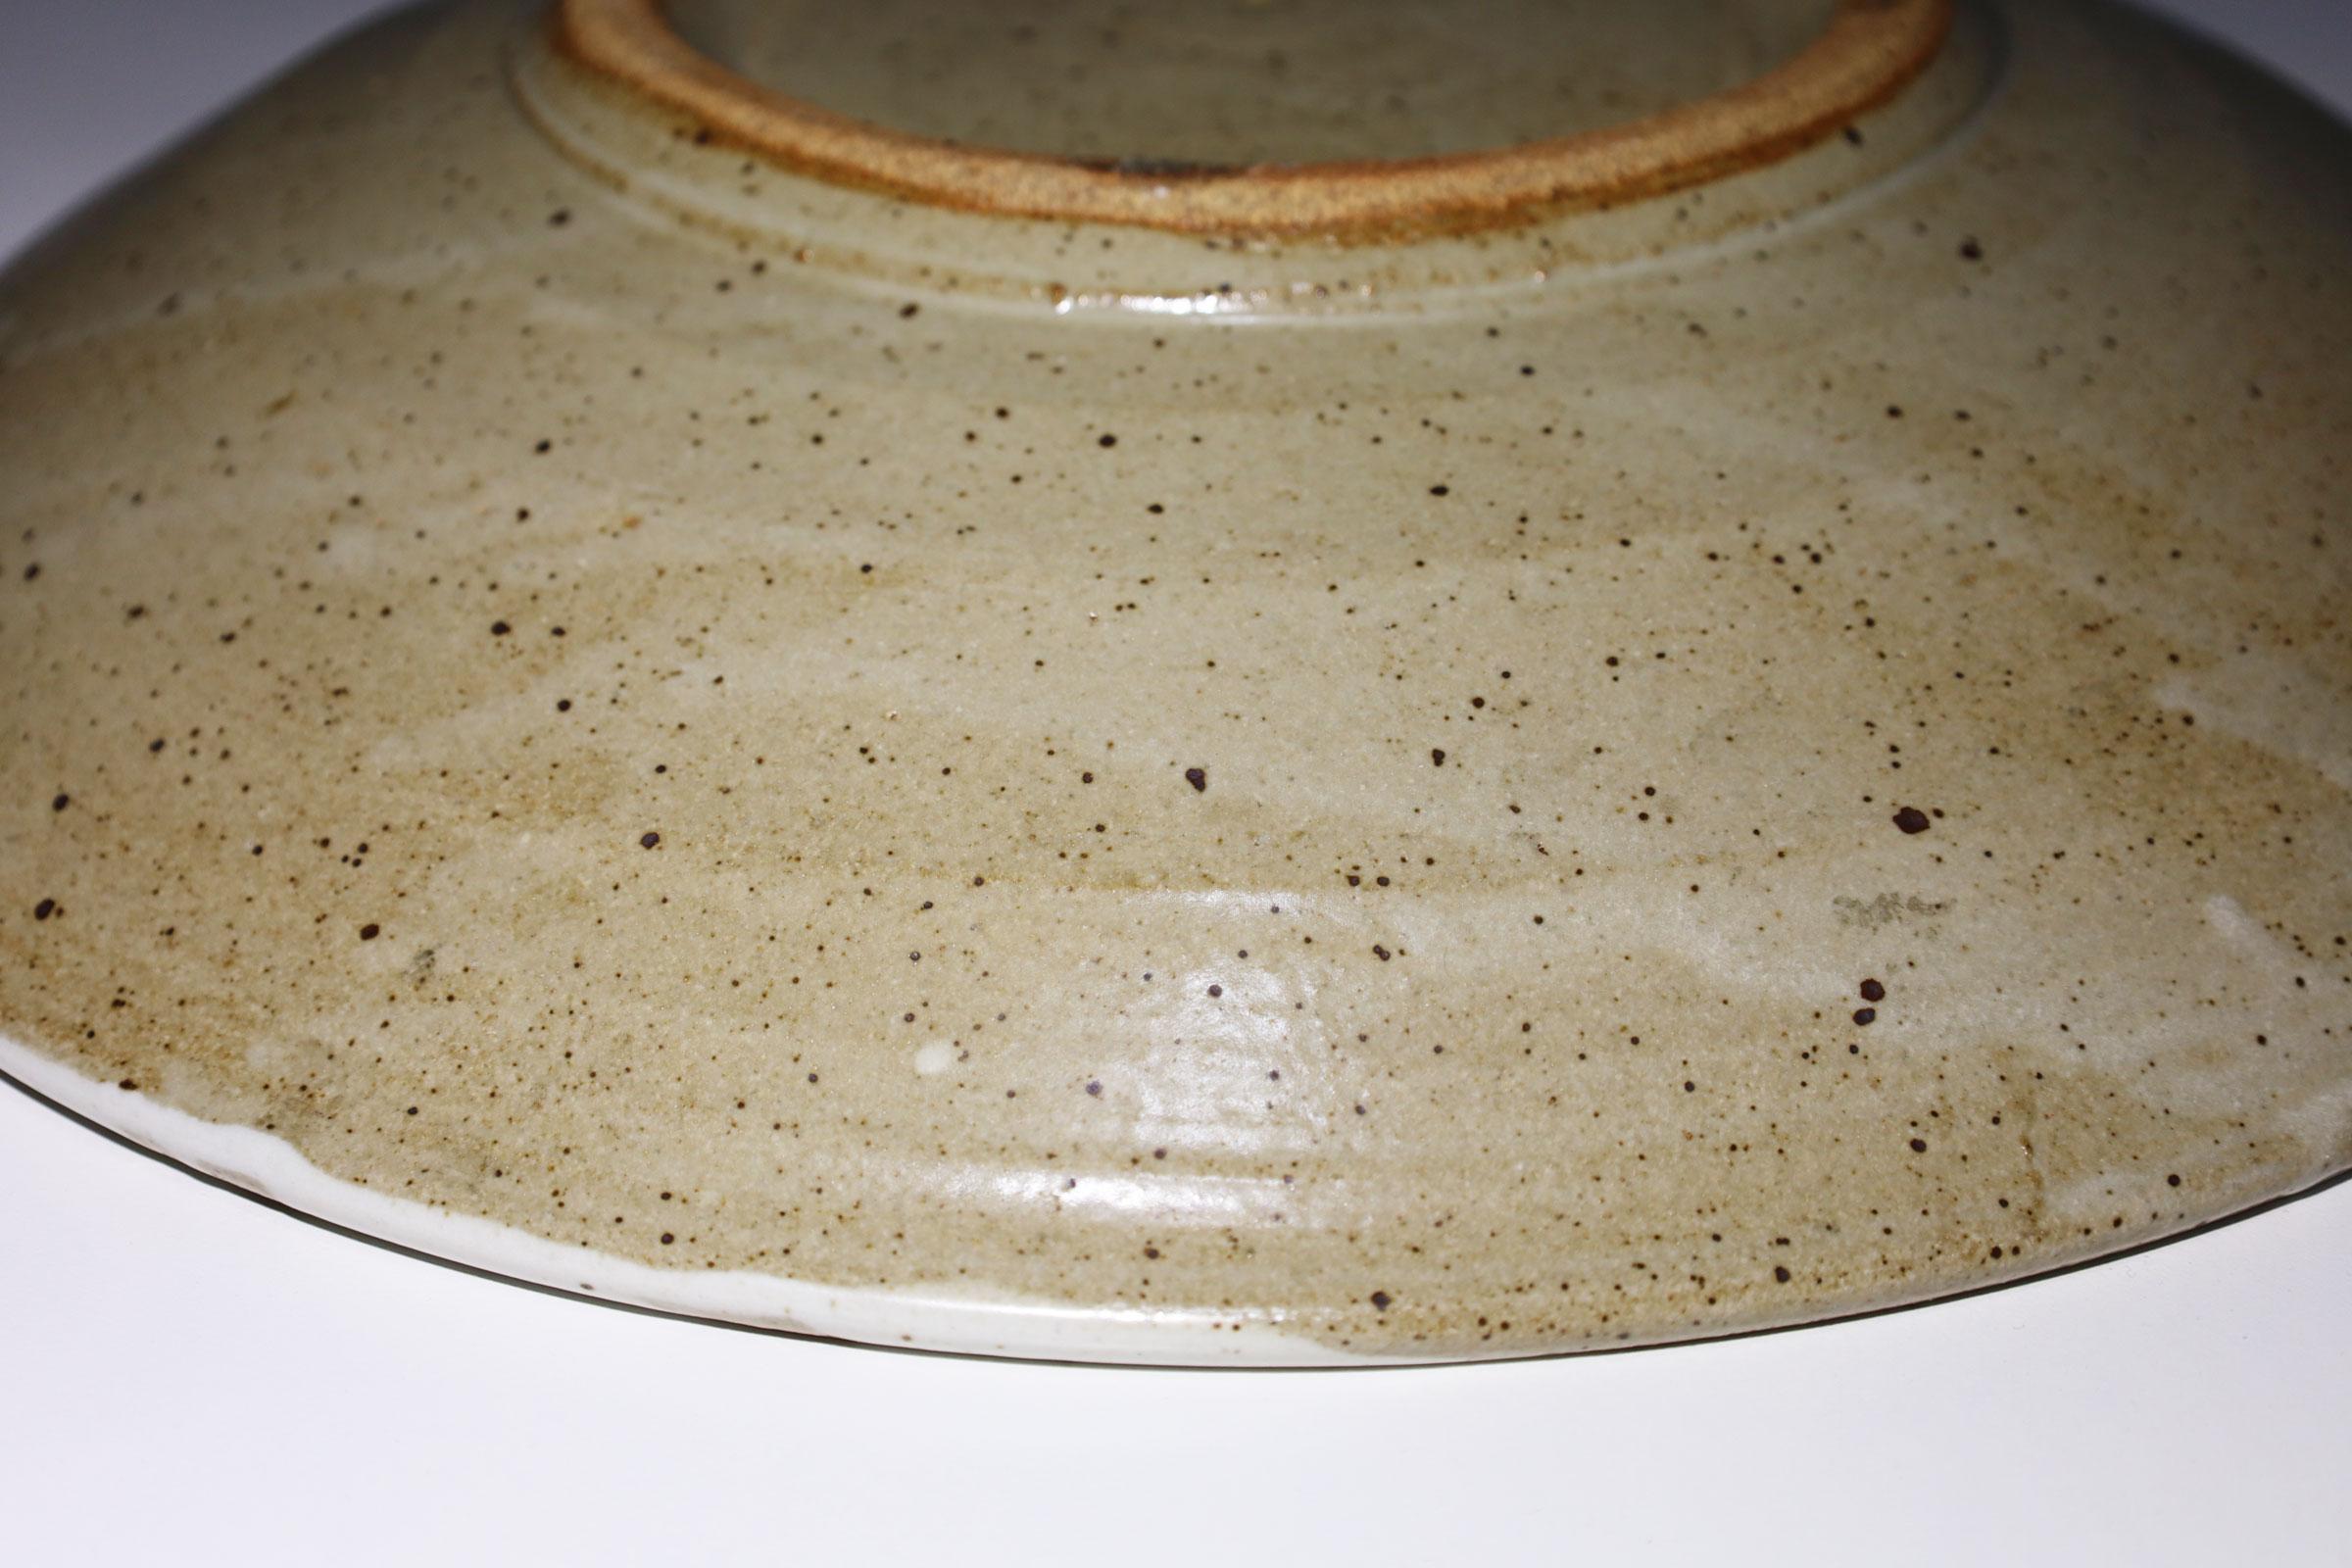 Grand plat en poterie de studio avec motif décoratif crème et marron. 

Warren MacKenzie est connu pour ses poteries fonctionnelles simples, tournées au tour, influencées par Bernard Leach et l'esthétique japonaise du travail de Shoji